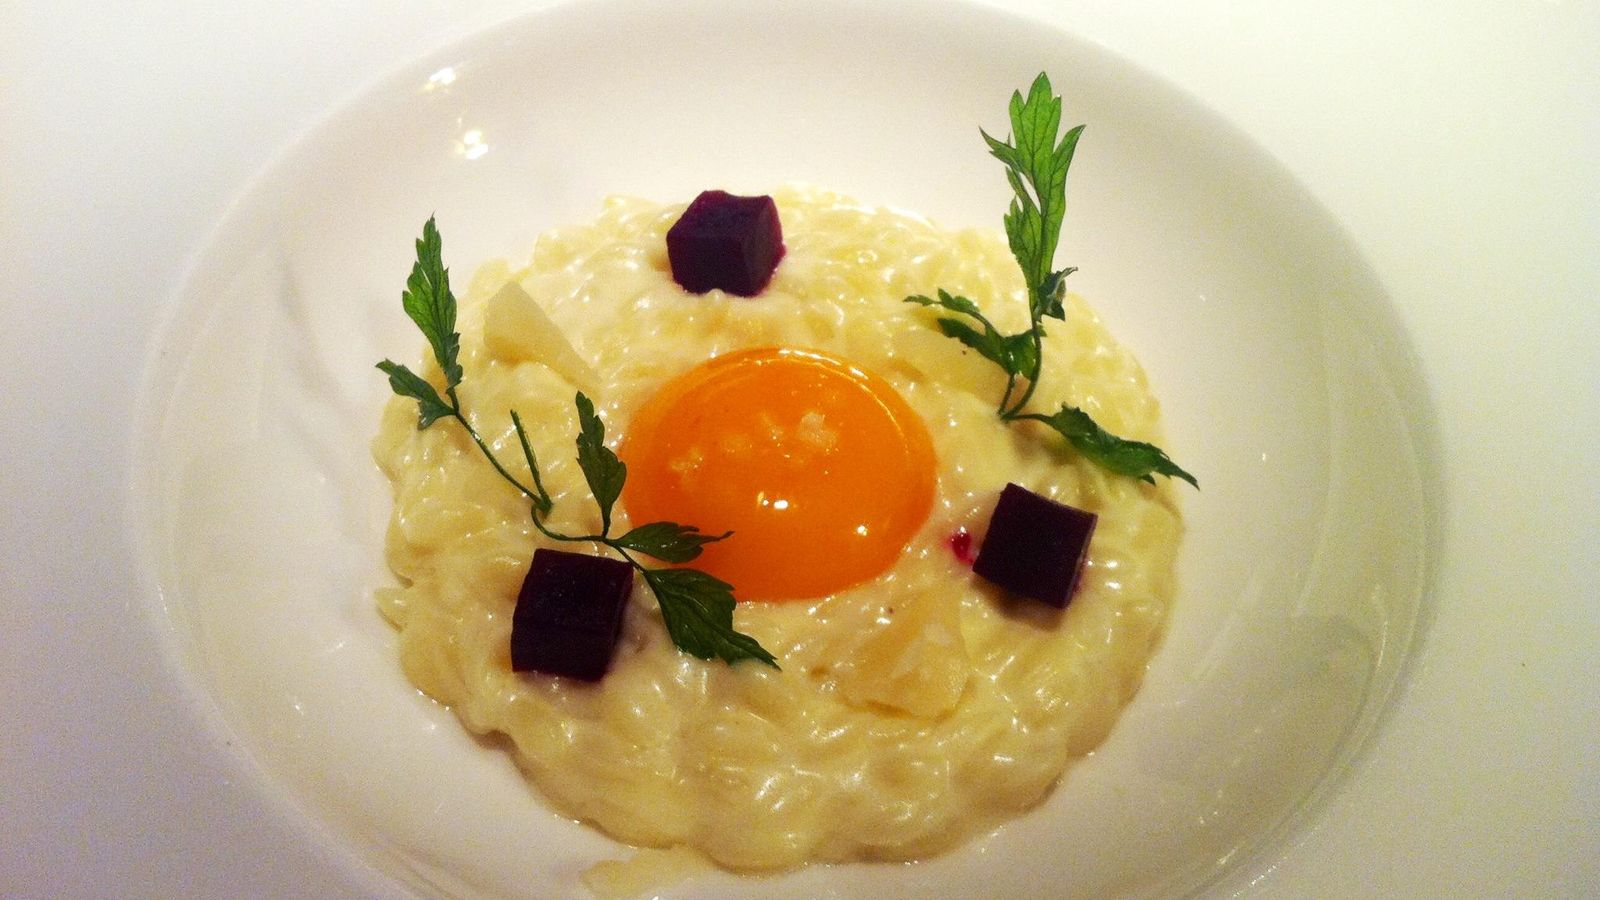 Foto: Puntalette con crema de parmesano, yema de huevo trufado y remolacha